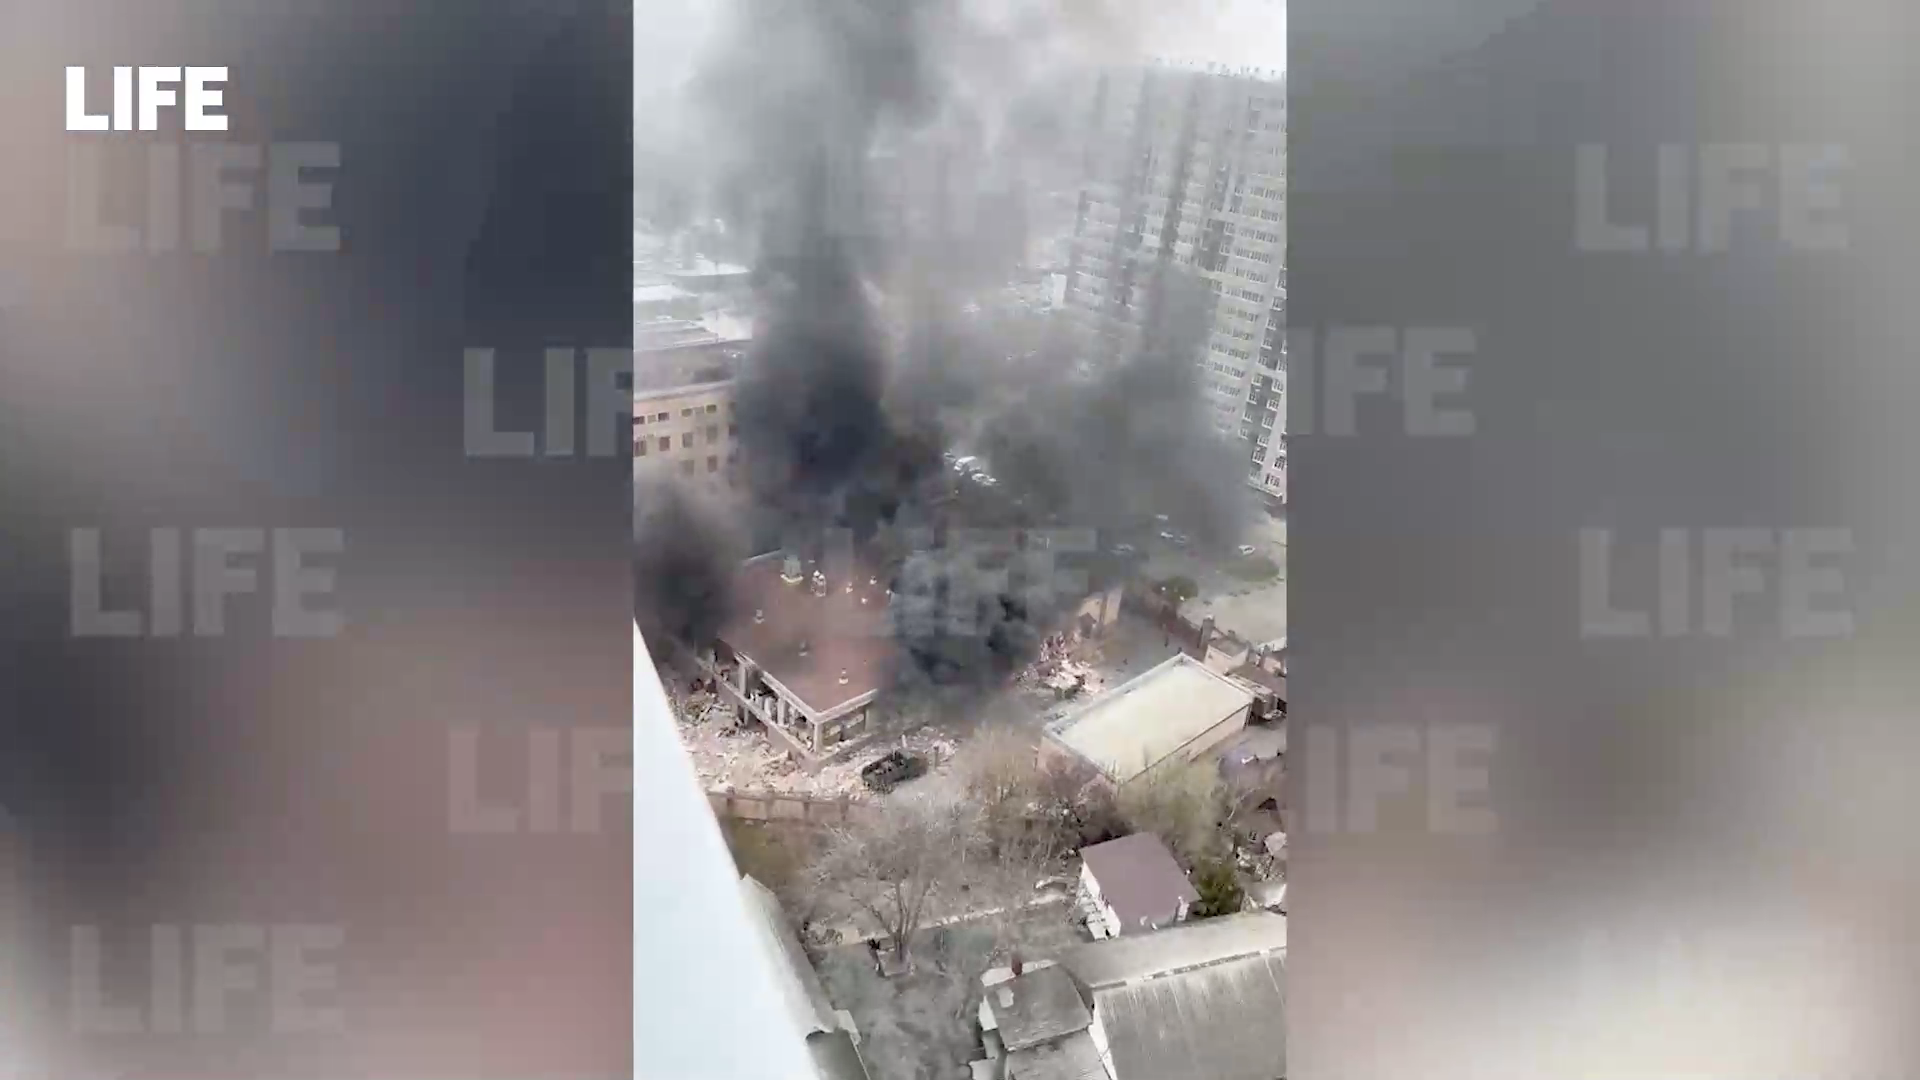 Три обгоревших тела нашли в здании ФСБ в Ростове-на-Дону после взрыва и пожара